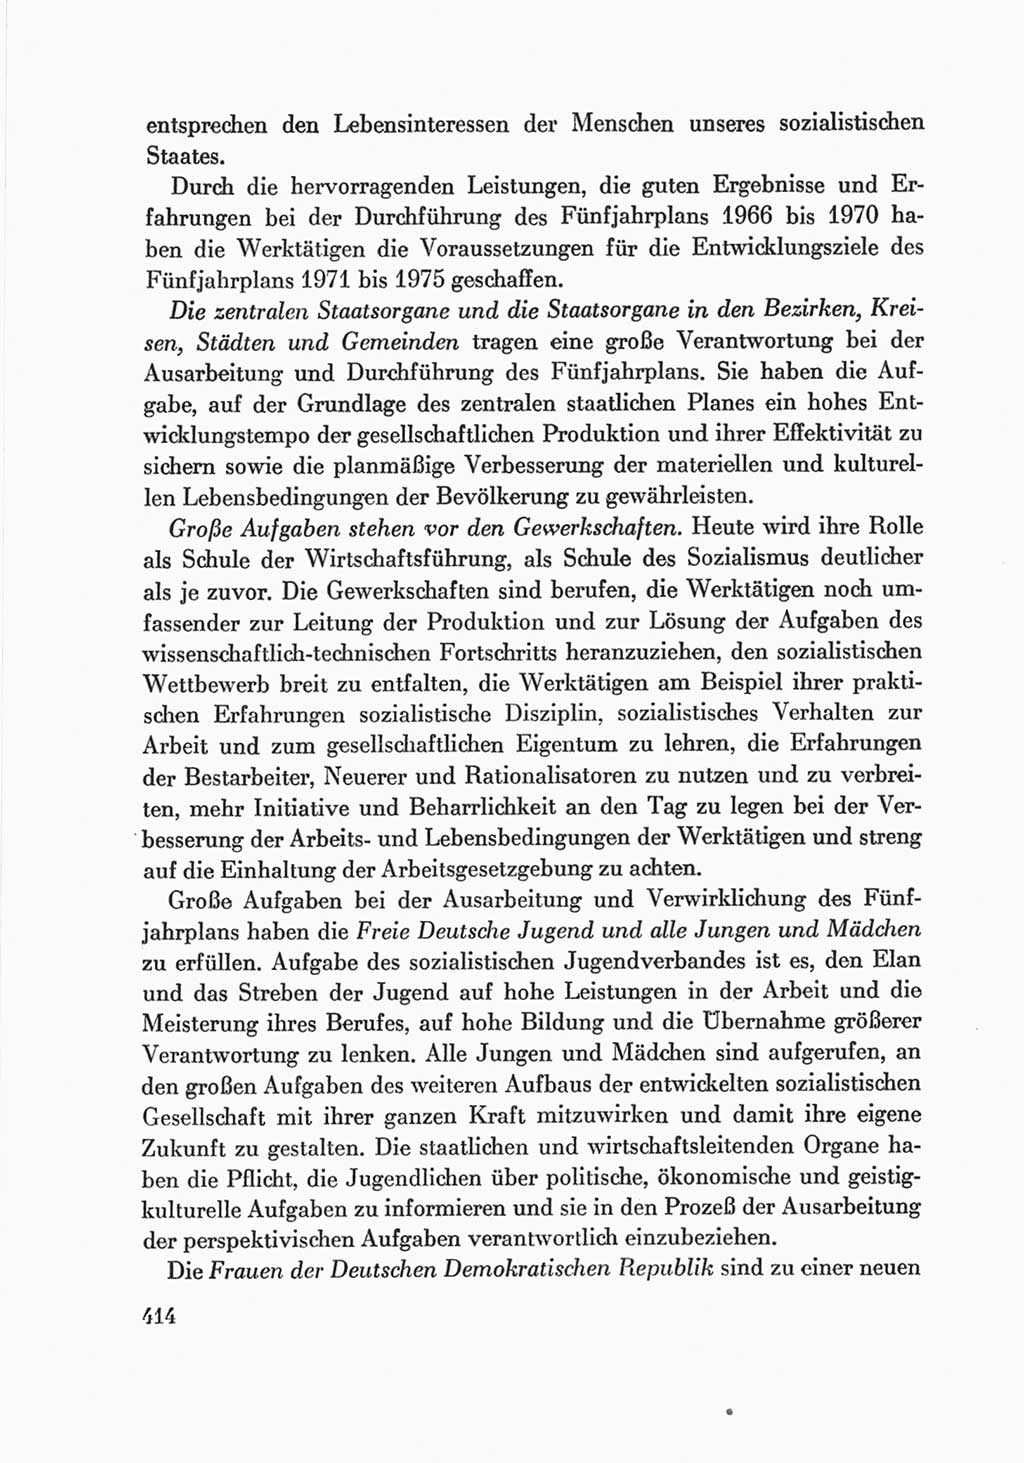 Protokoll der Verhandlungen des Ⅷ. Parteitages der Sozialistischen Einheitspartei Deutschlands (SED) [Deutsche Demokratische Republik (DDR)] 1971, Band 2, Seite 414 (Prot. Verh. Ⅷ. PT SED DDR 1971, Bd. 2, S. 414)